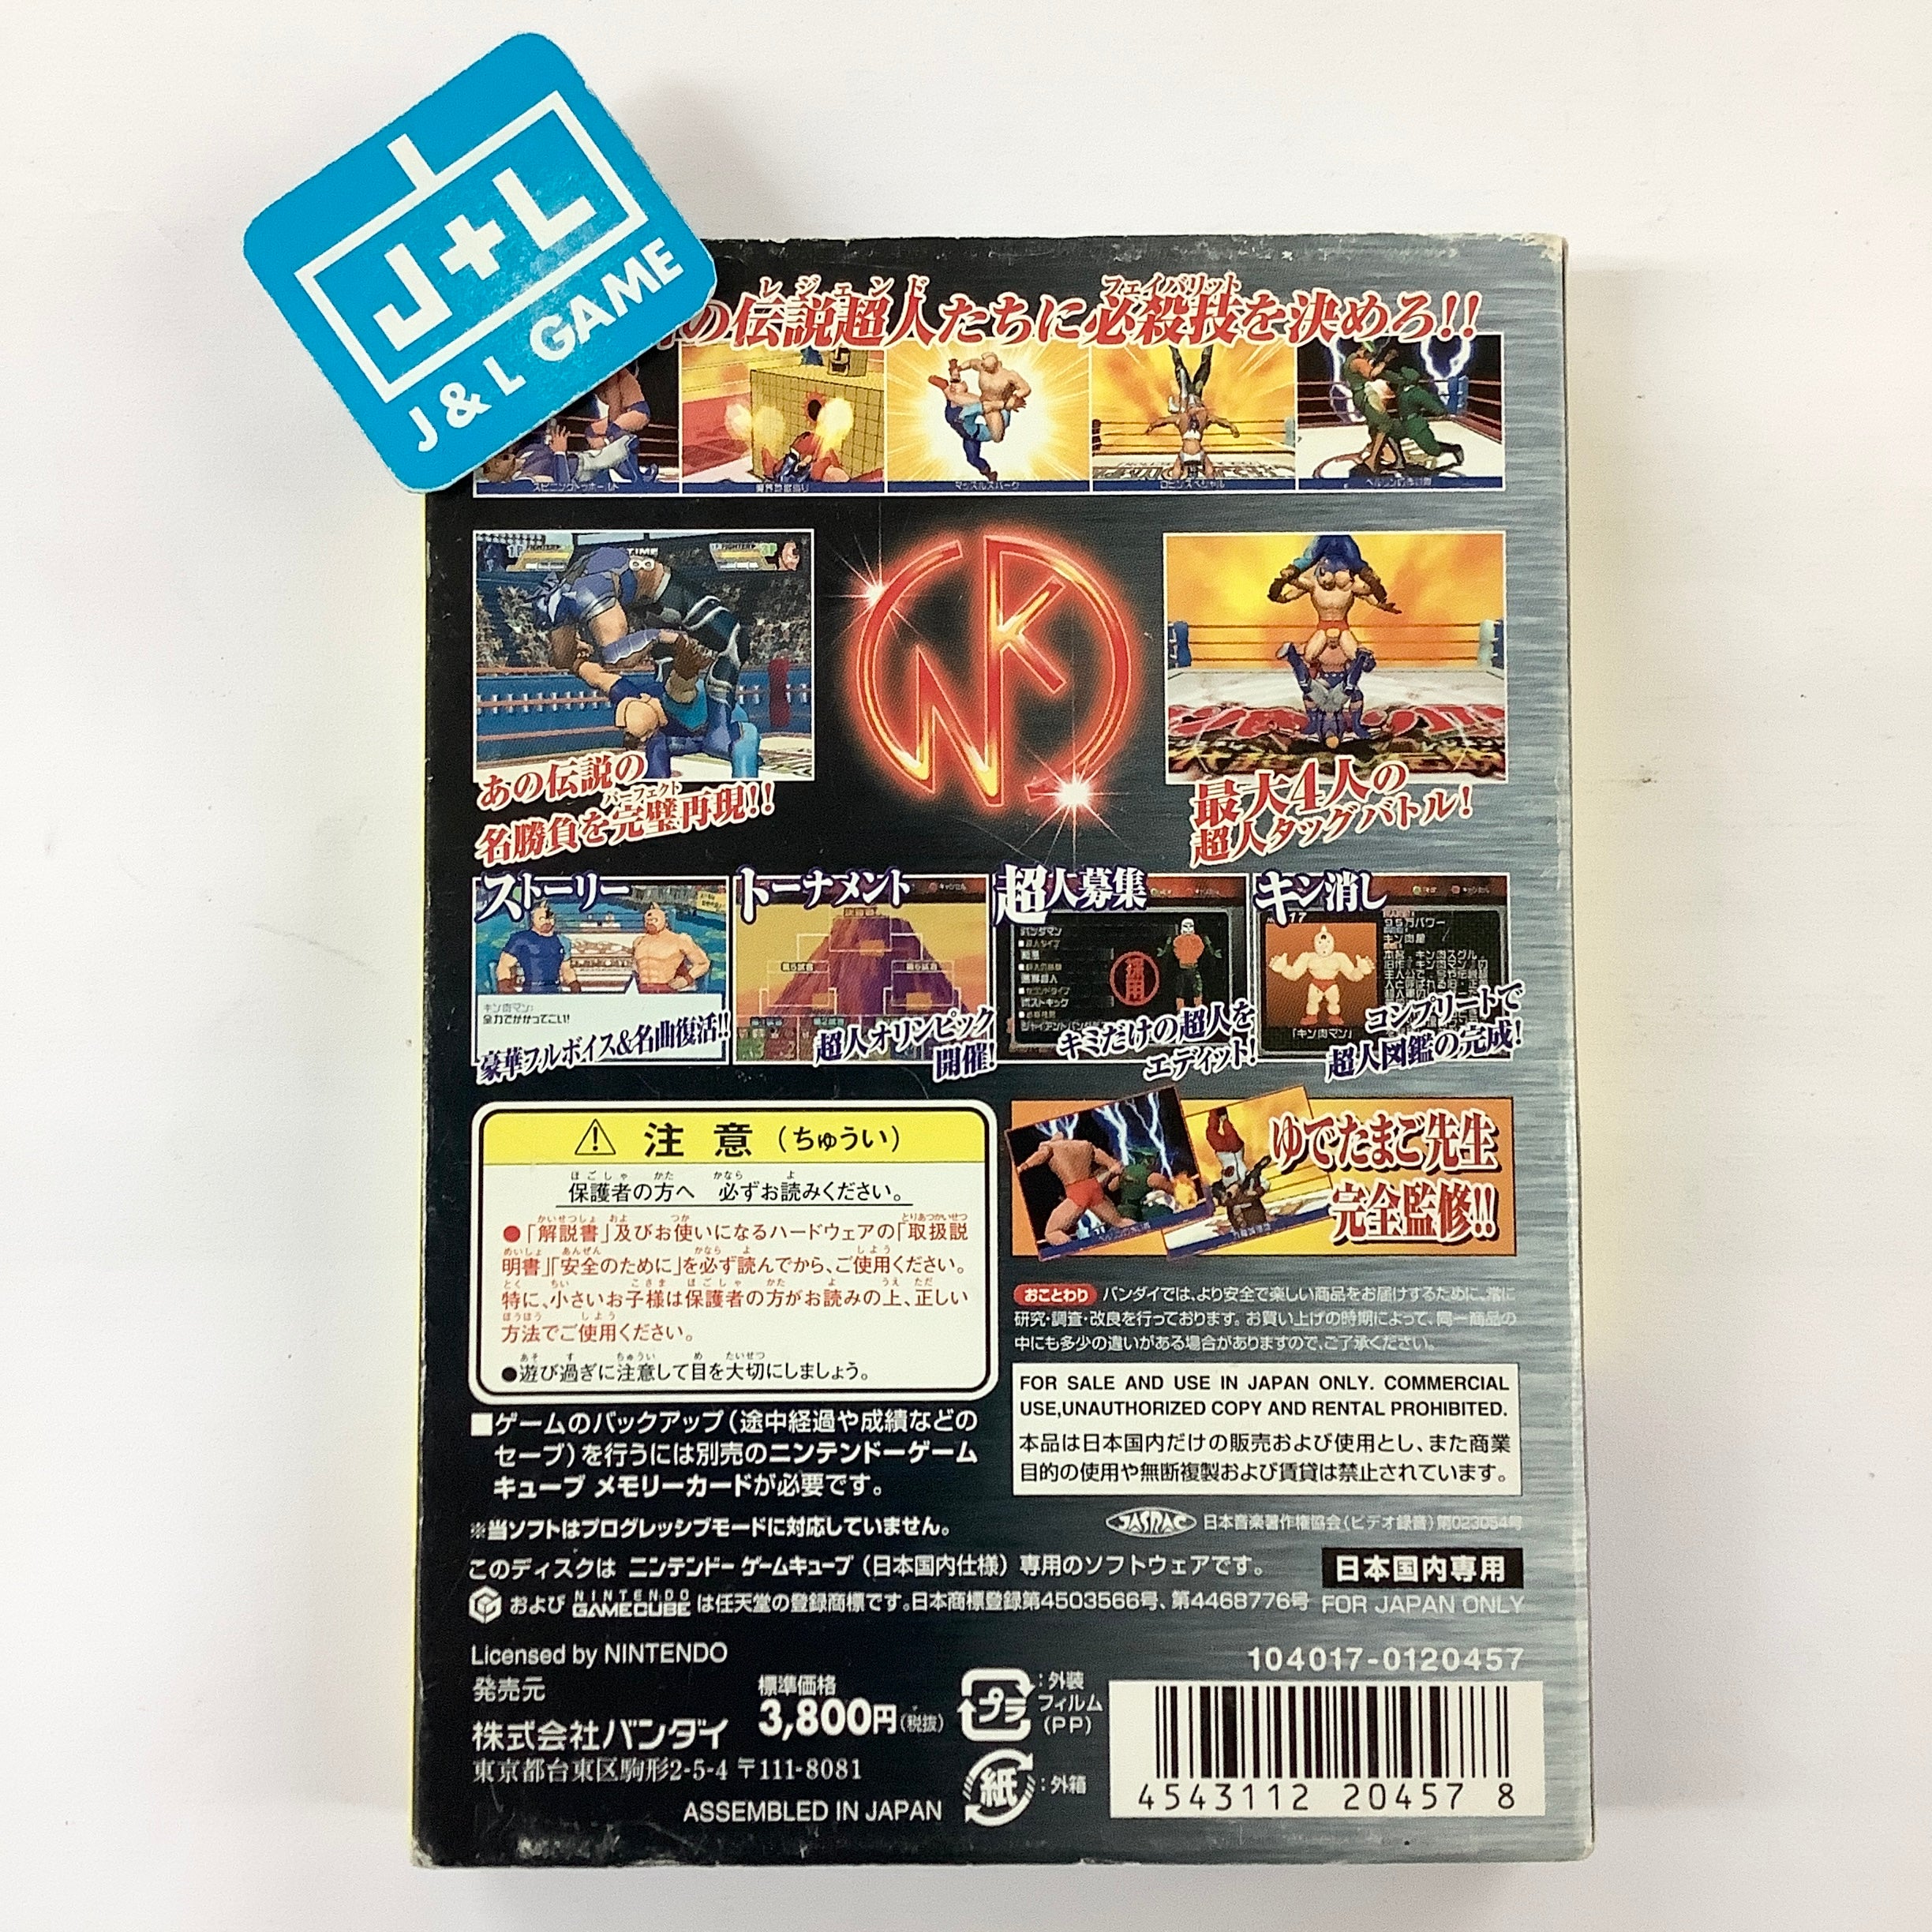 Kinnikuman Nisei: Shinsedai Choujin vs Densetsu Choujin (Bandai the Best)- (GC) GameCube [Pre-Owned] (Japanese Import) Video Games Bandai   